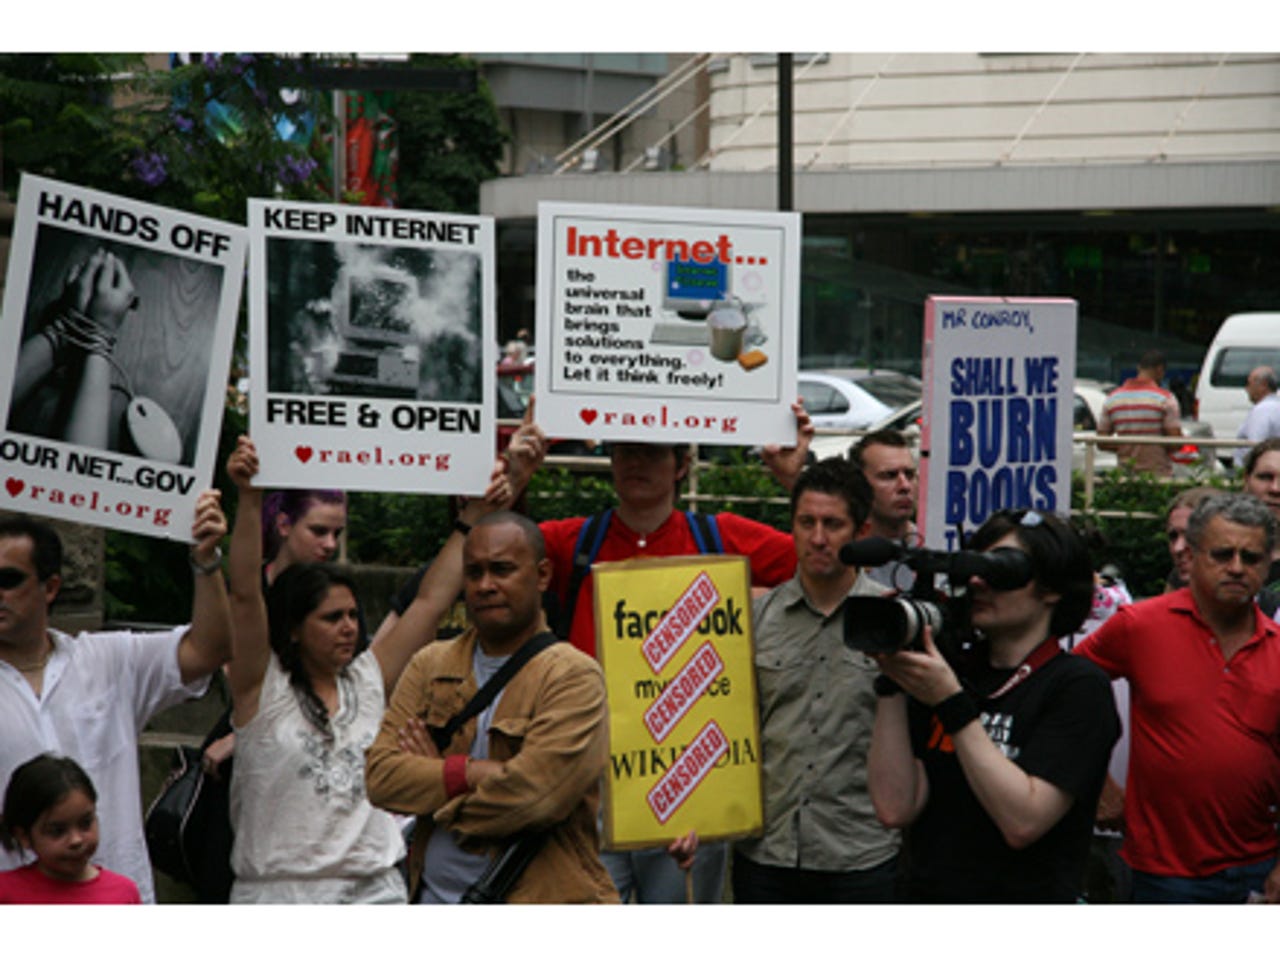 photos-sydneysiders-protest-internet-filtering11.jpg